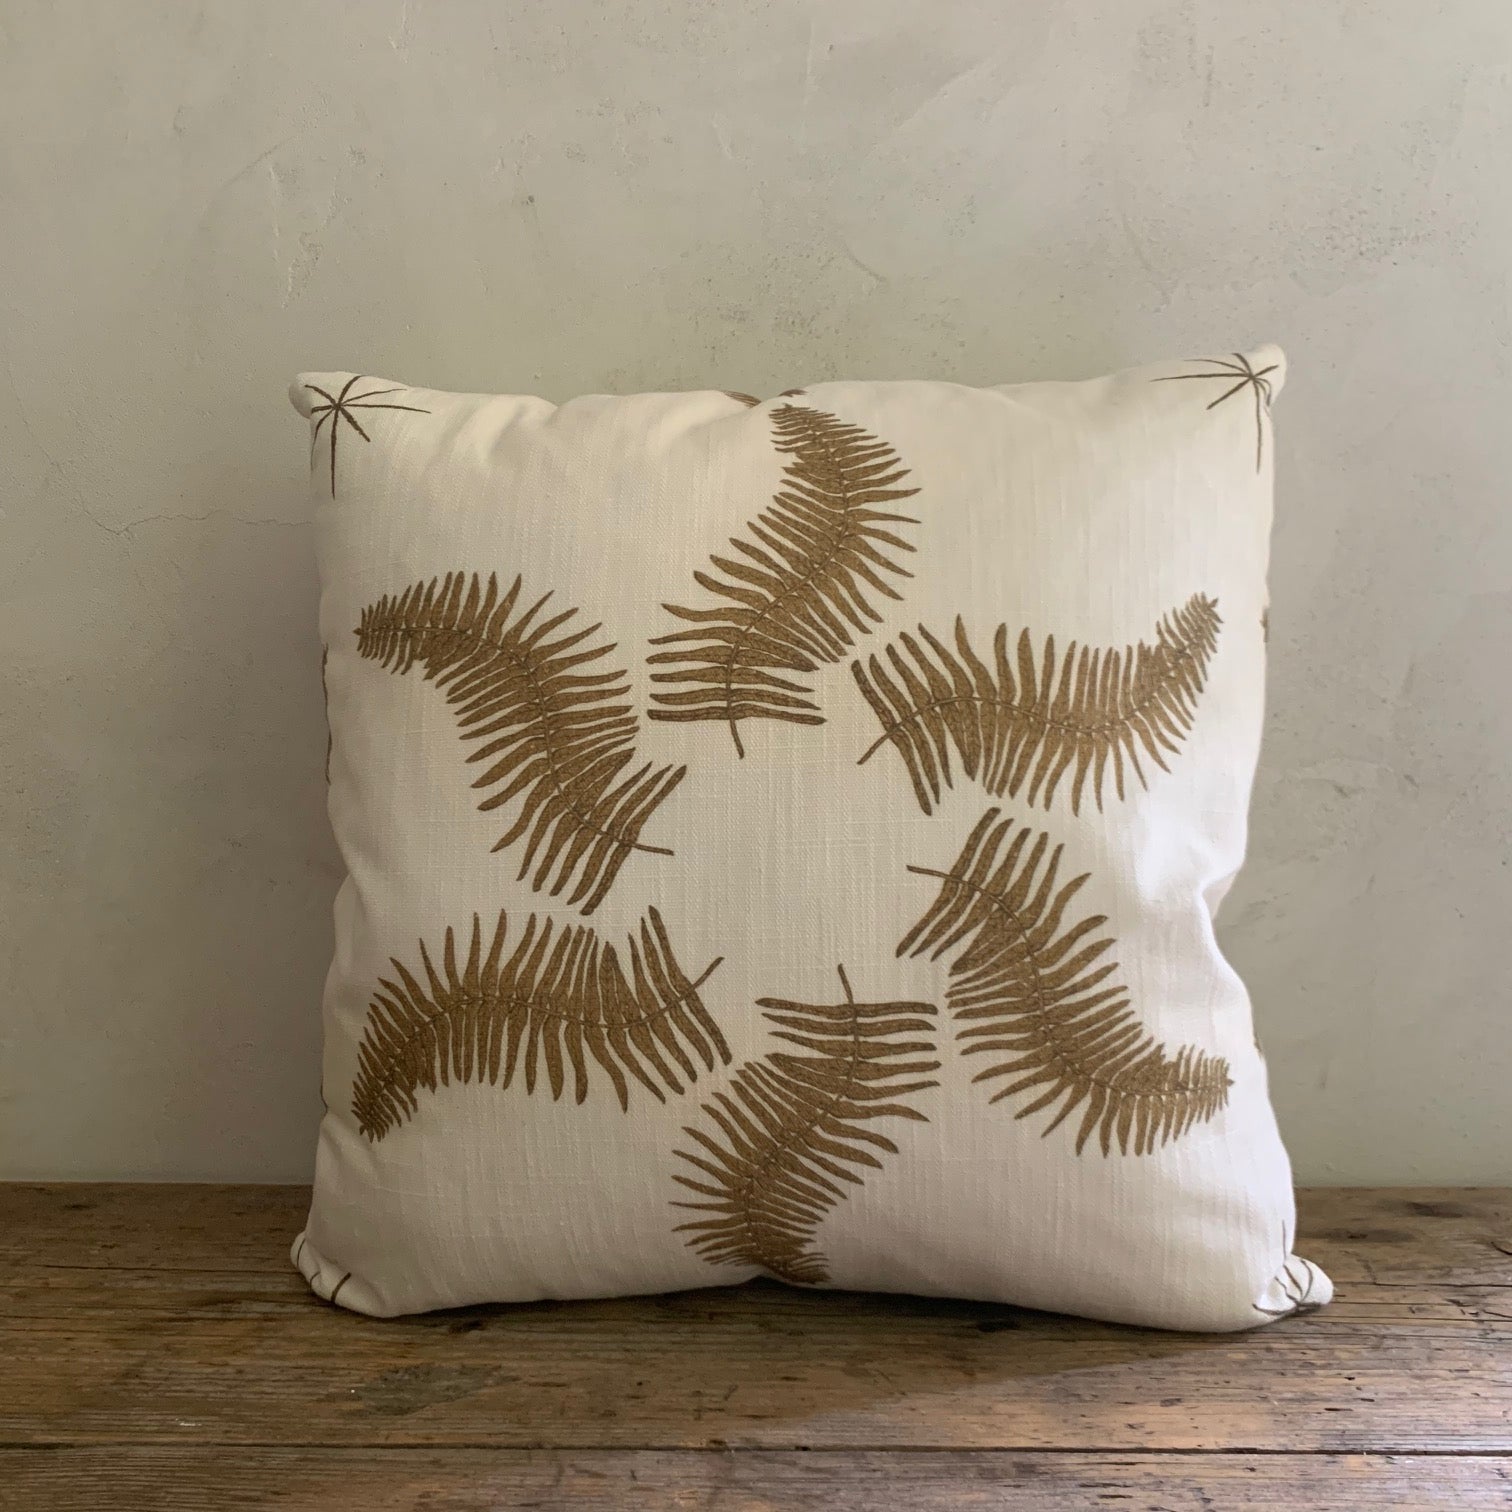 LL textiles  "fern star" pillow